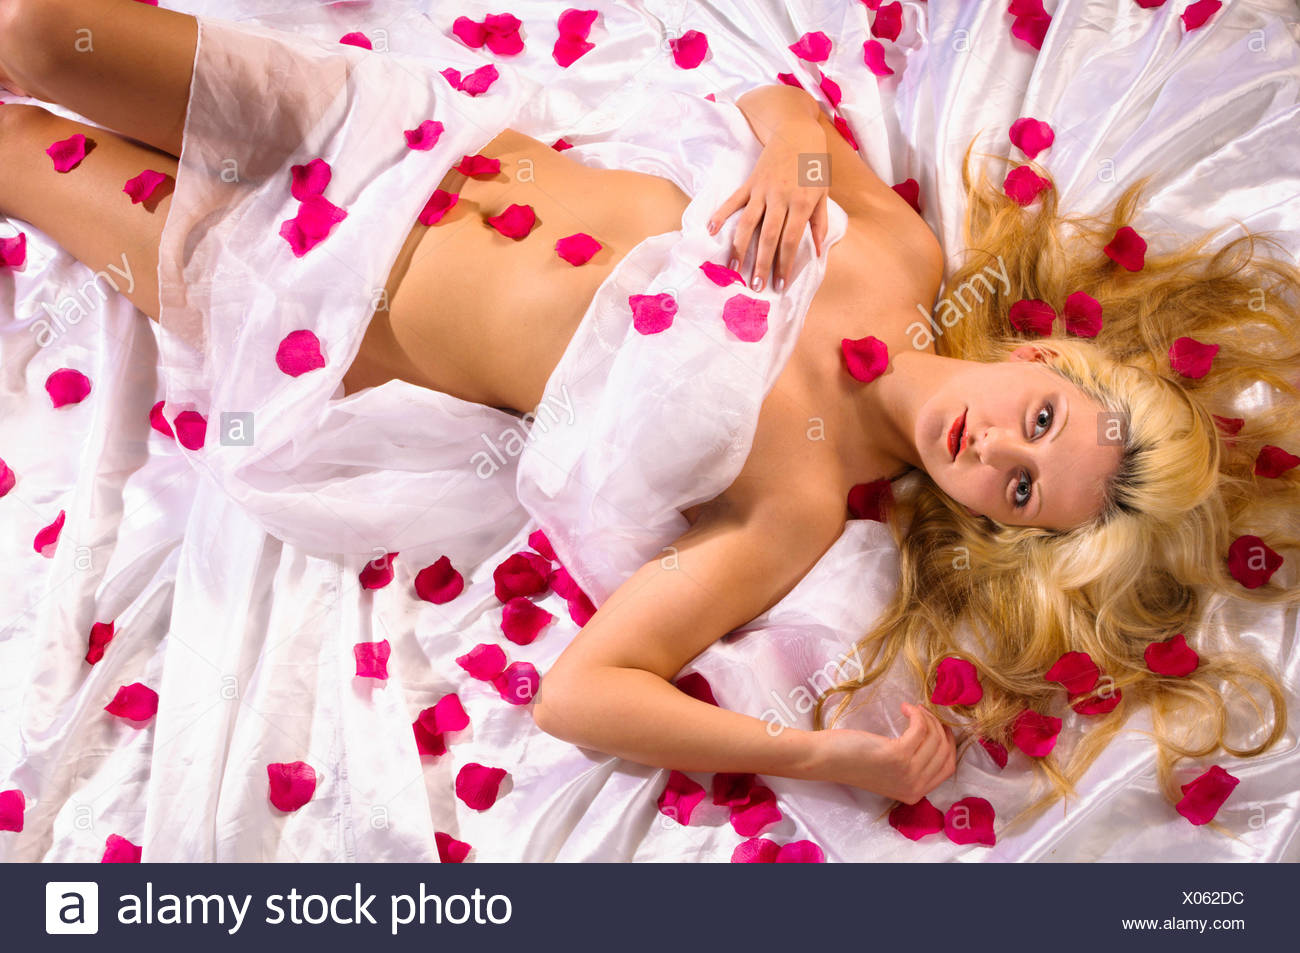 Attraktive junge Frau liegt auf einem Bett und ist Laken weißer bär von  roten Rosenblättern umgeben Photo Stock - Alamy